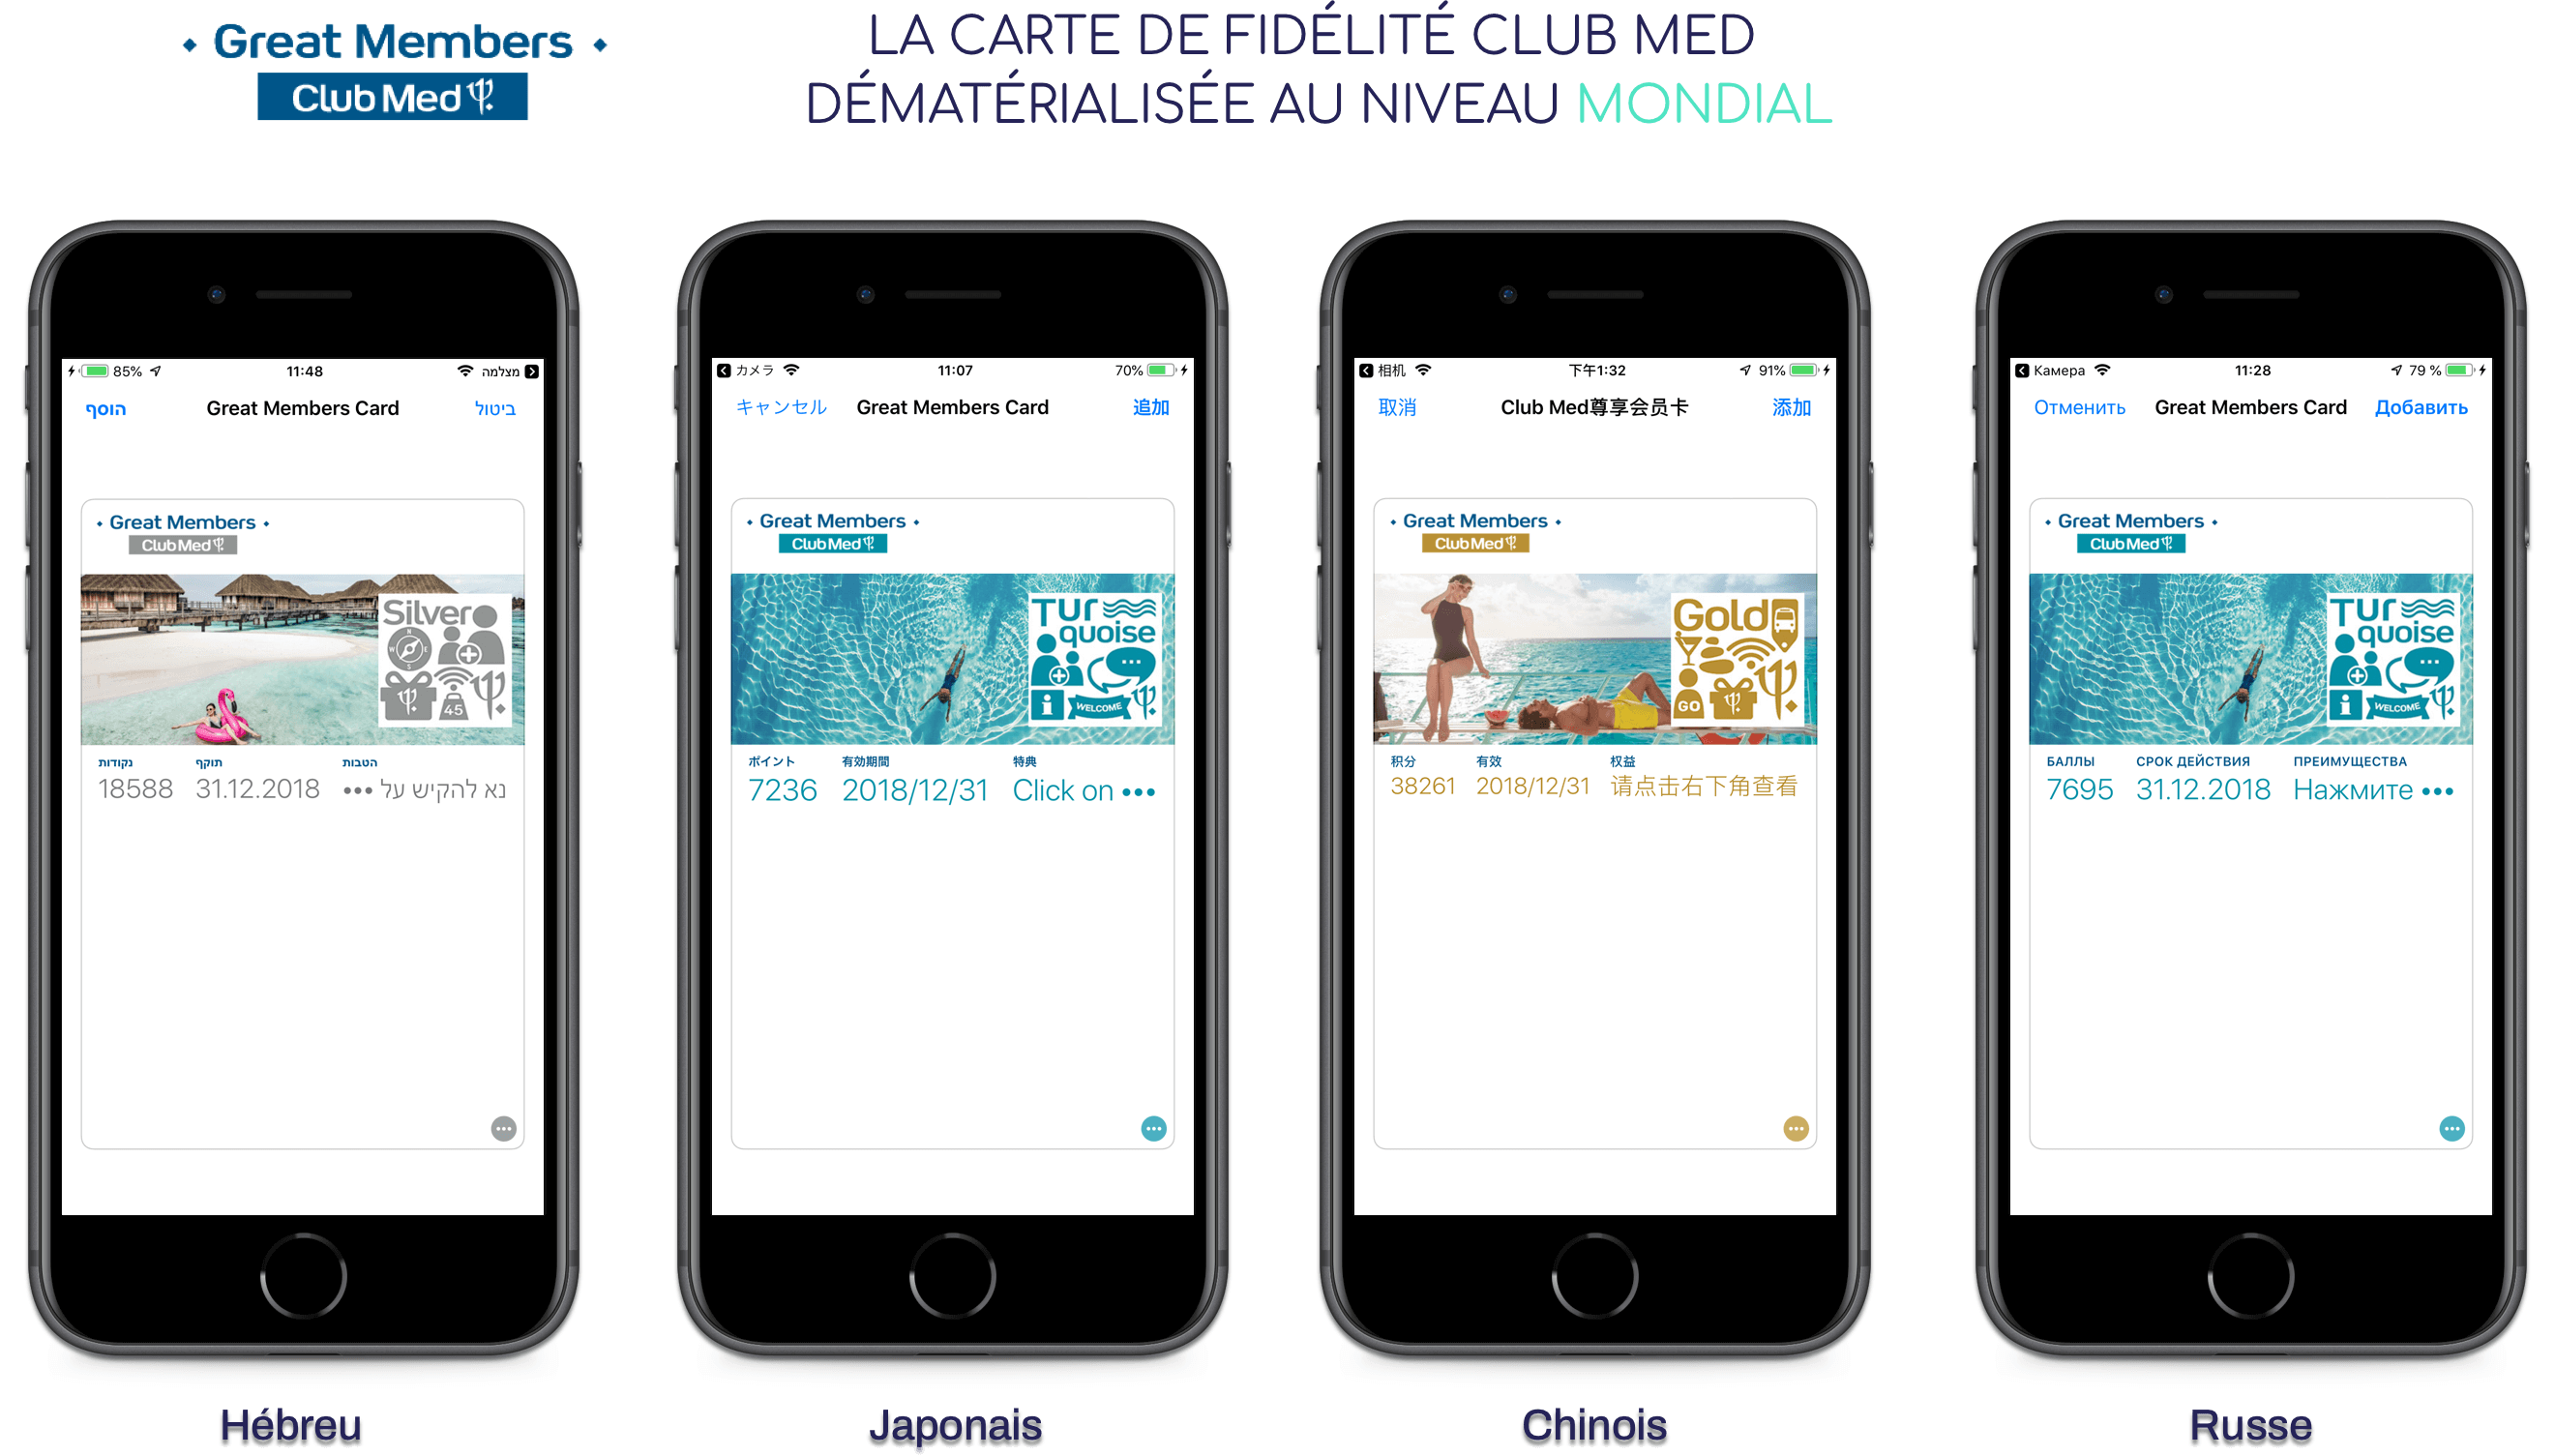 Visuel Club Med intègre les mobile wallet à sa stratégie mobile !